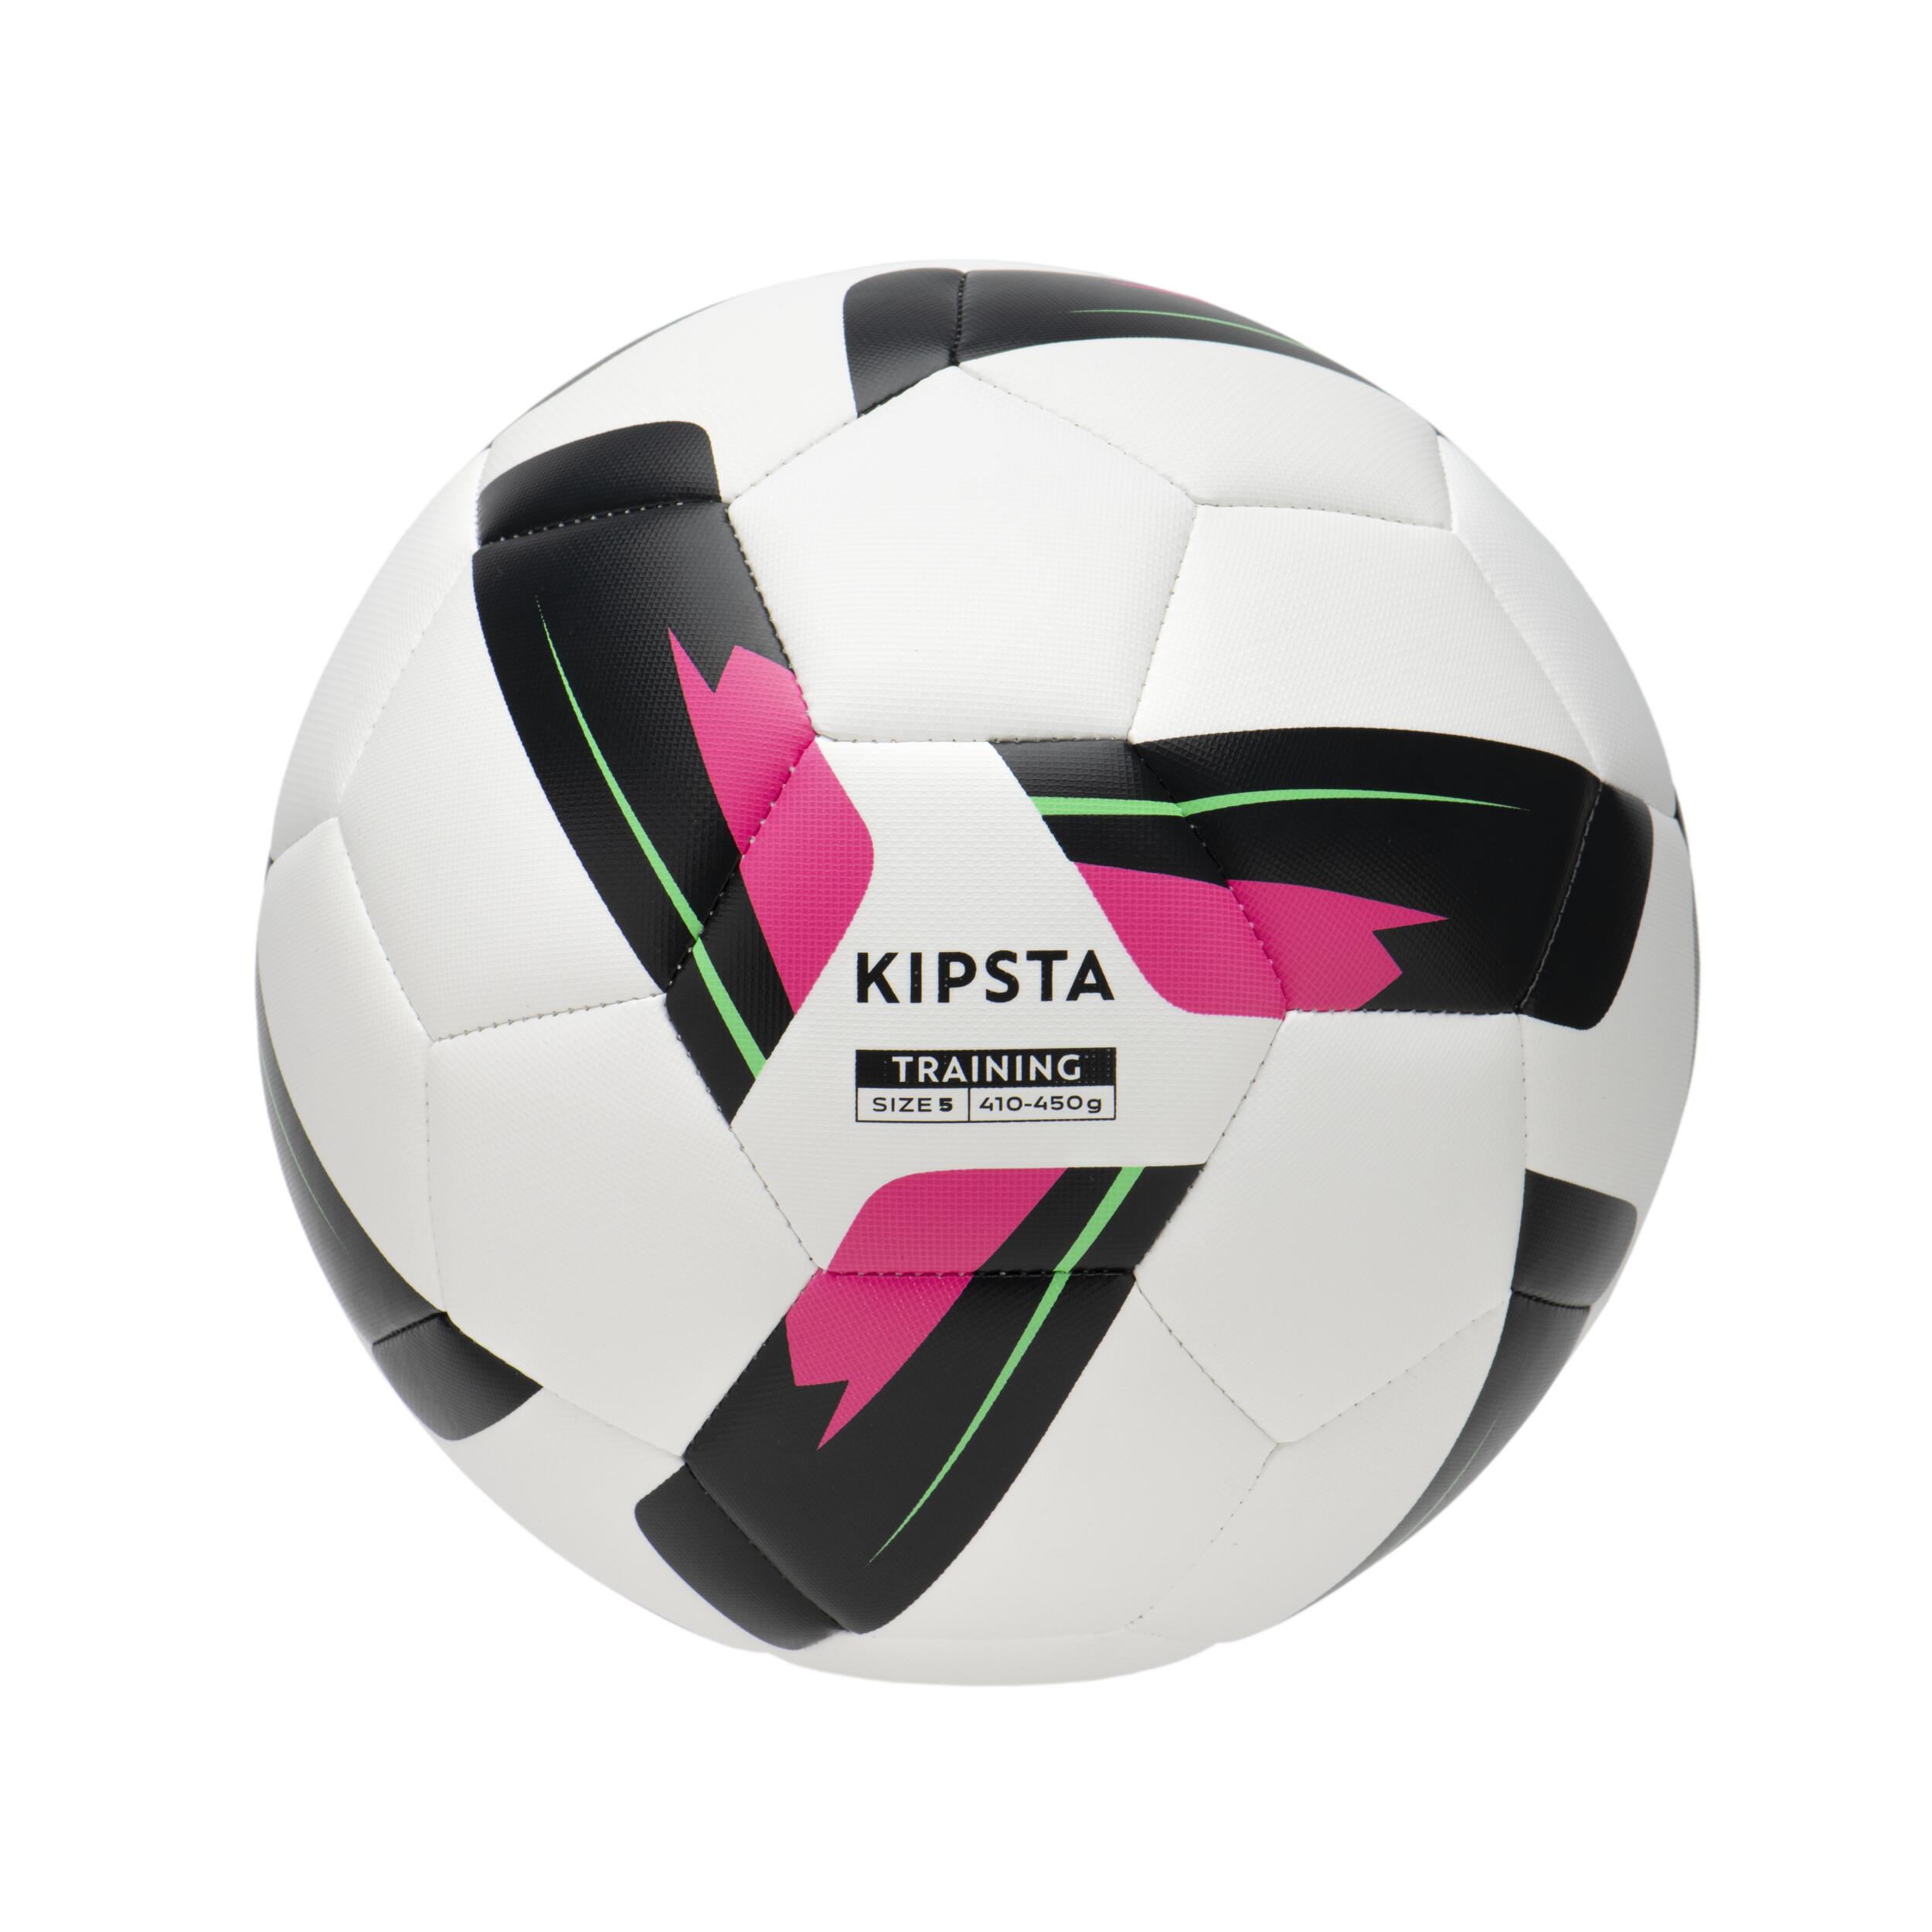 KIPSTA Size 5 Machine-Stitched Football Training Ball - White